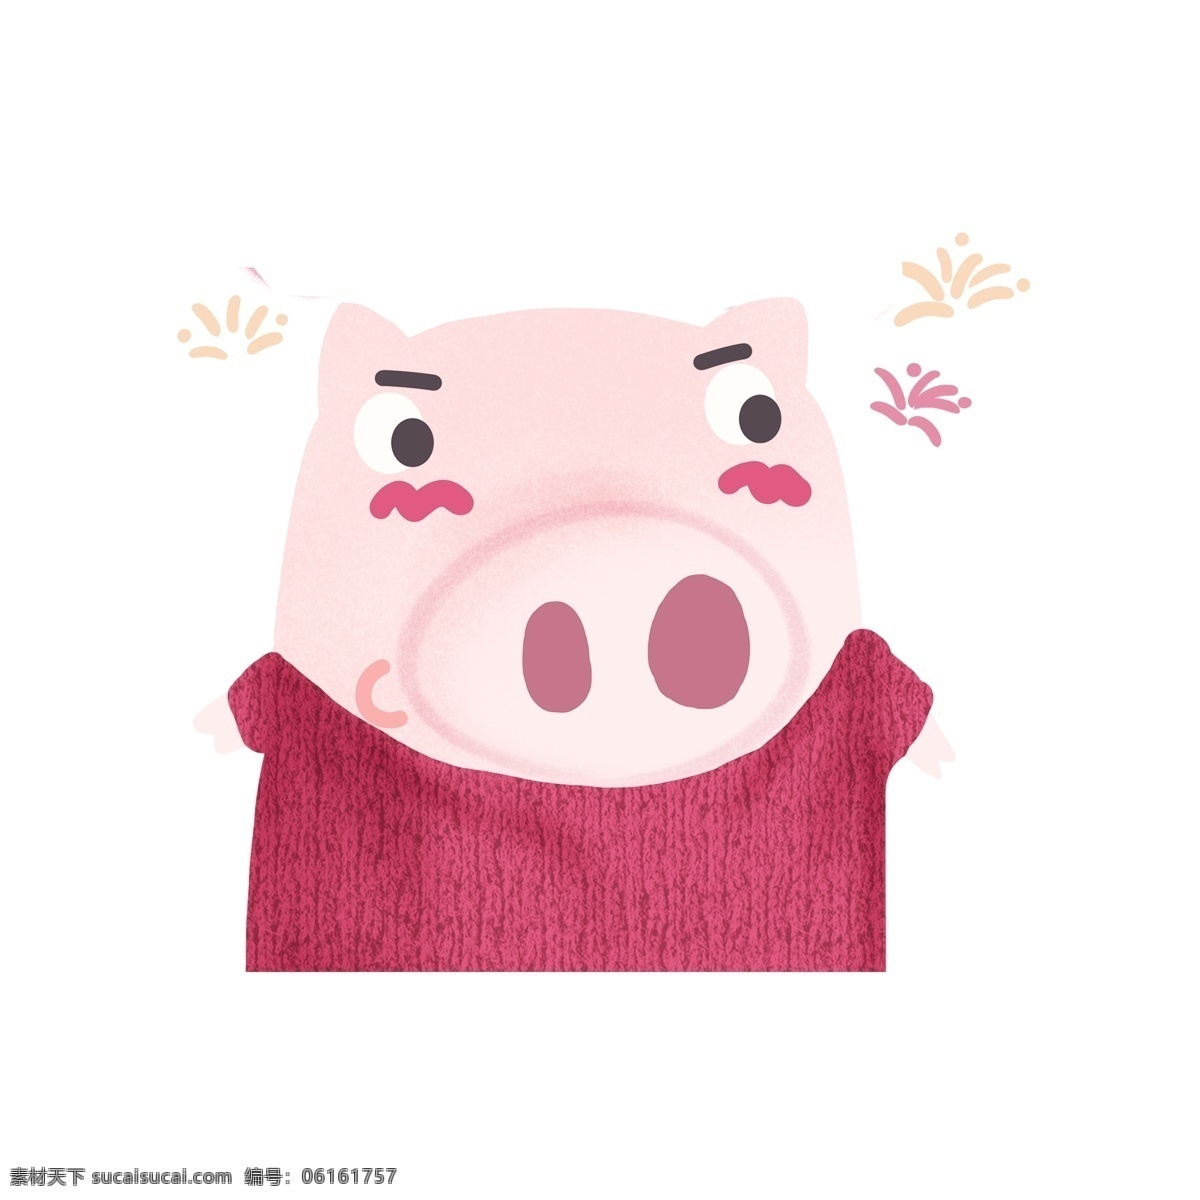 彩绘 简约 2019 猪年 小 猪 形象 元素 小猪 手绘图案 创意元素 手绘元素 猪年元素 手绘 元素装饰 元素设计